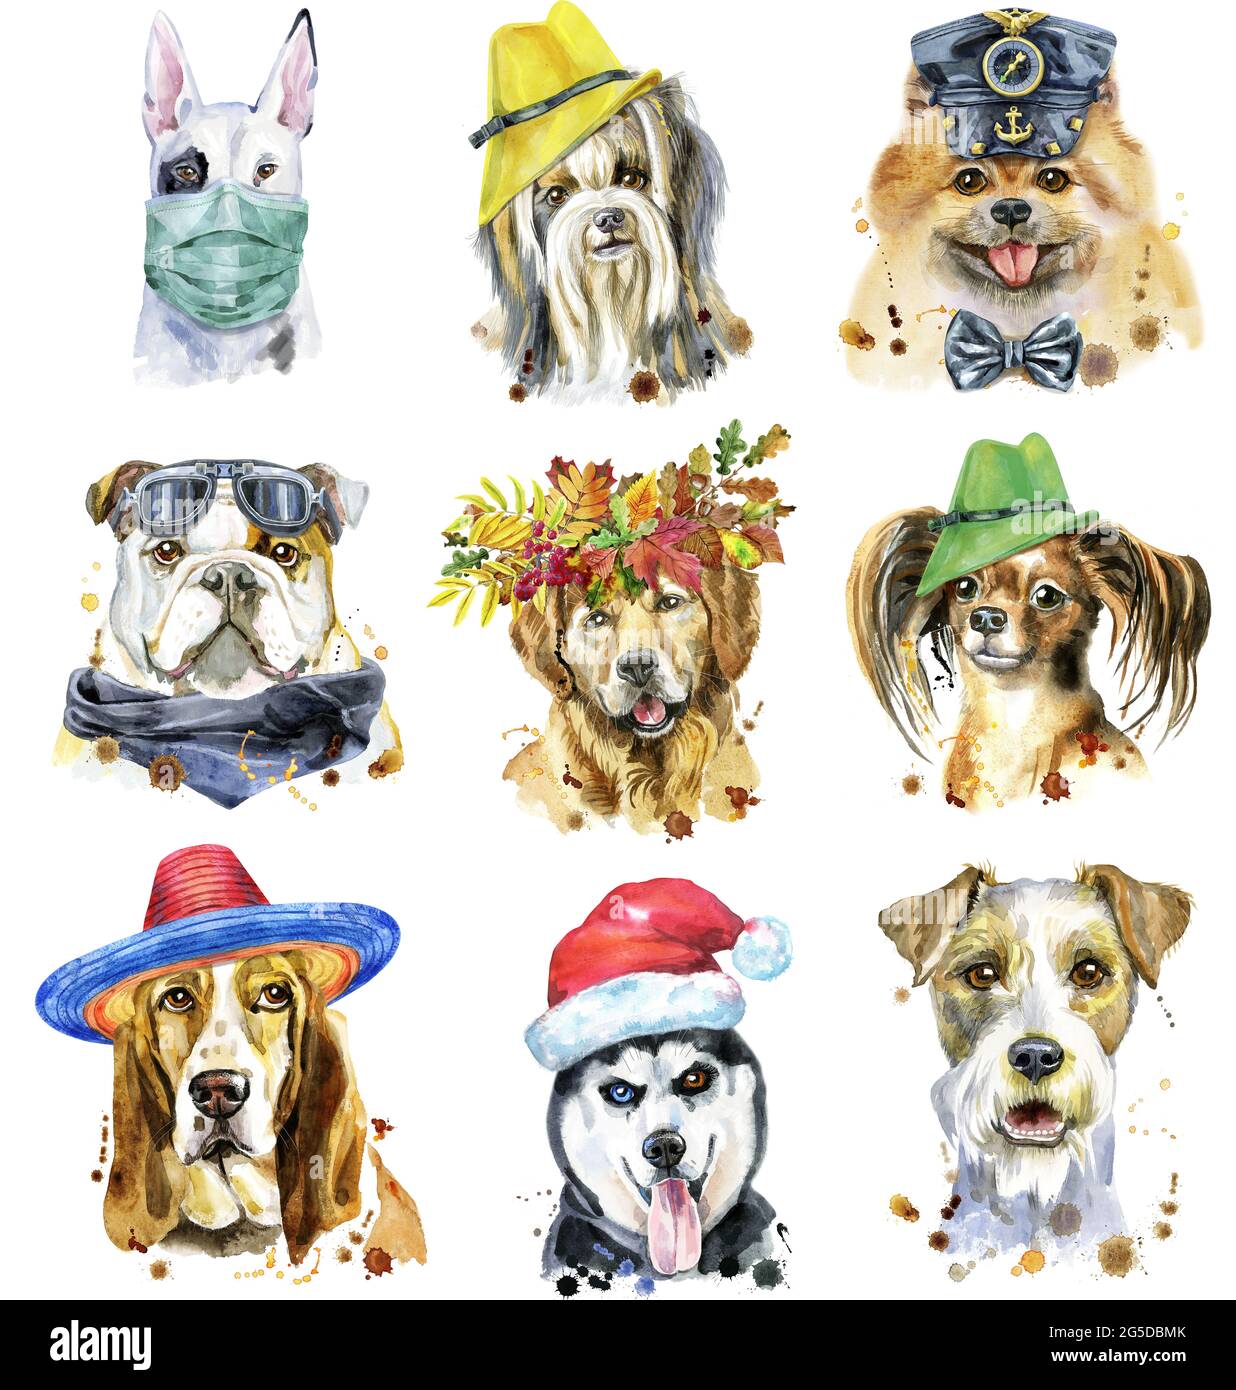 Carino set di ritratti acquerello di cani. Per la grafica della t-shirt. Illustrazione dei cani acquerelli Foto Stock